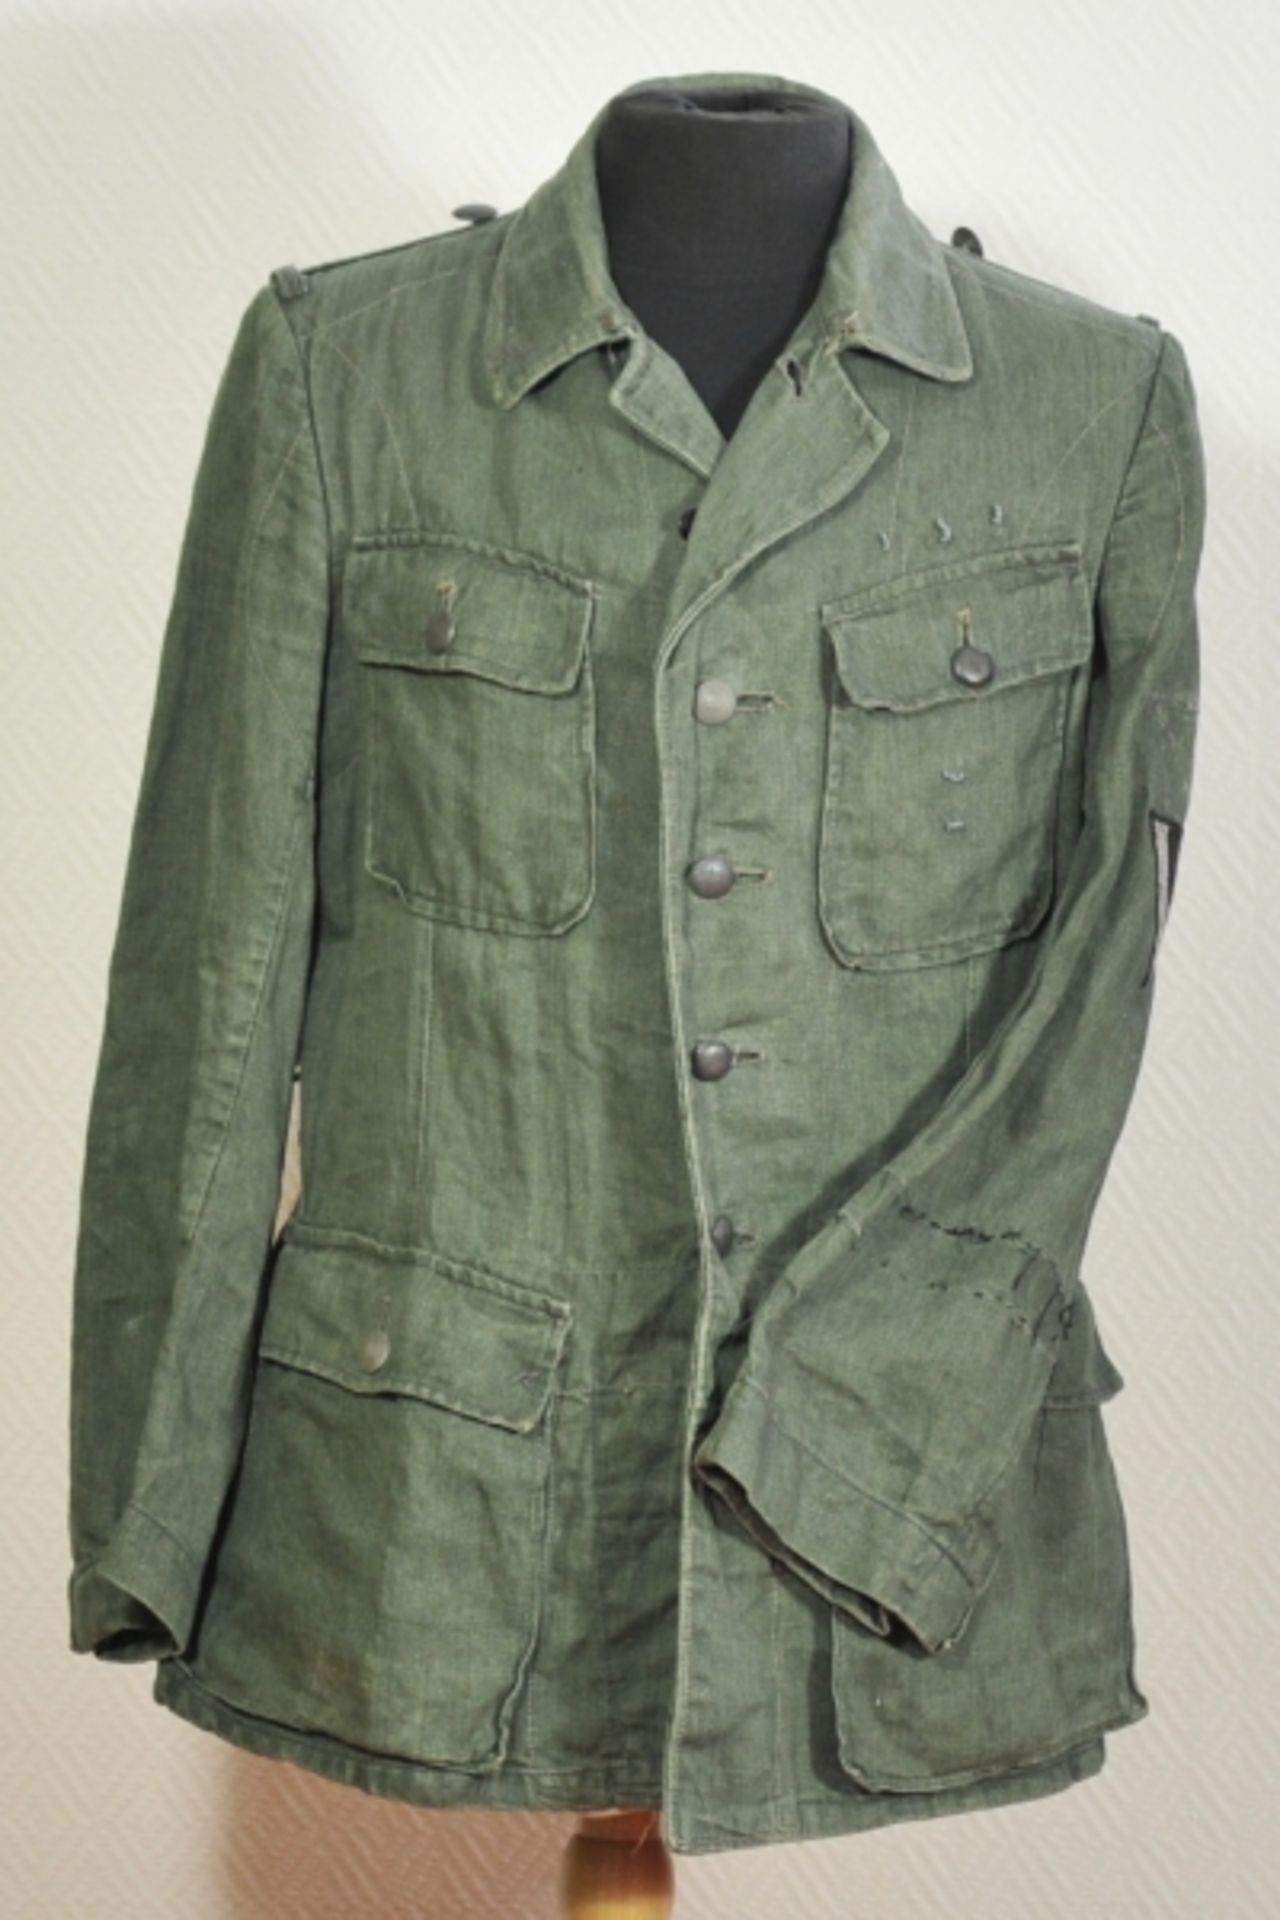 Feldbluse der Wehrmacht.Grünes Tuch, Fischgrätmuster, graue Knöpfe, mit zwei Koppelhaken, die